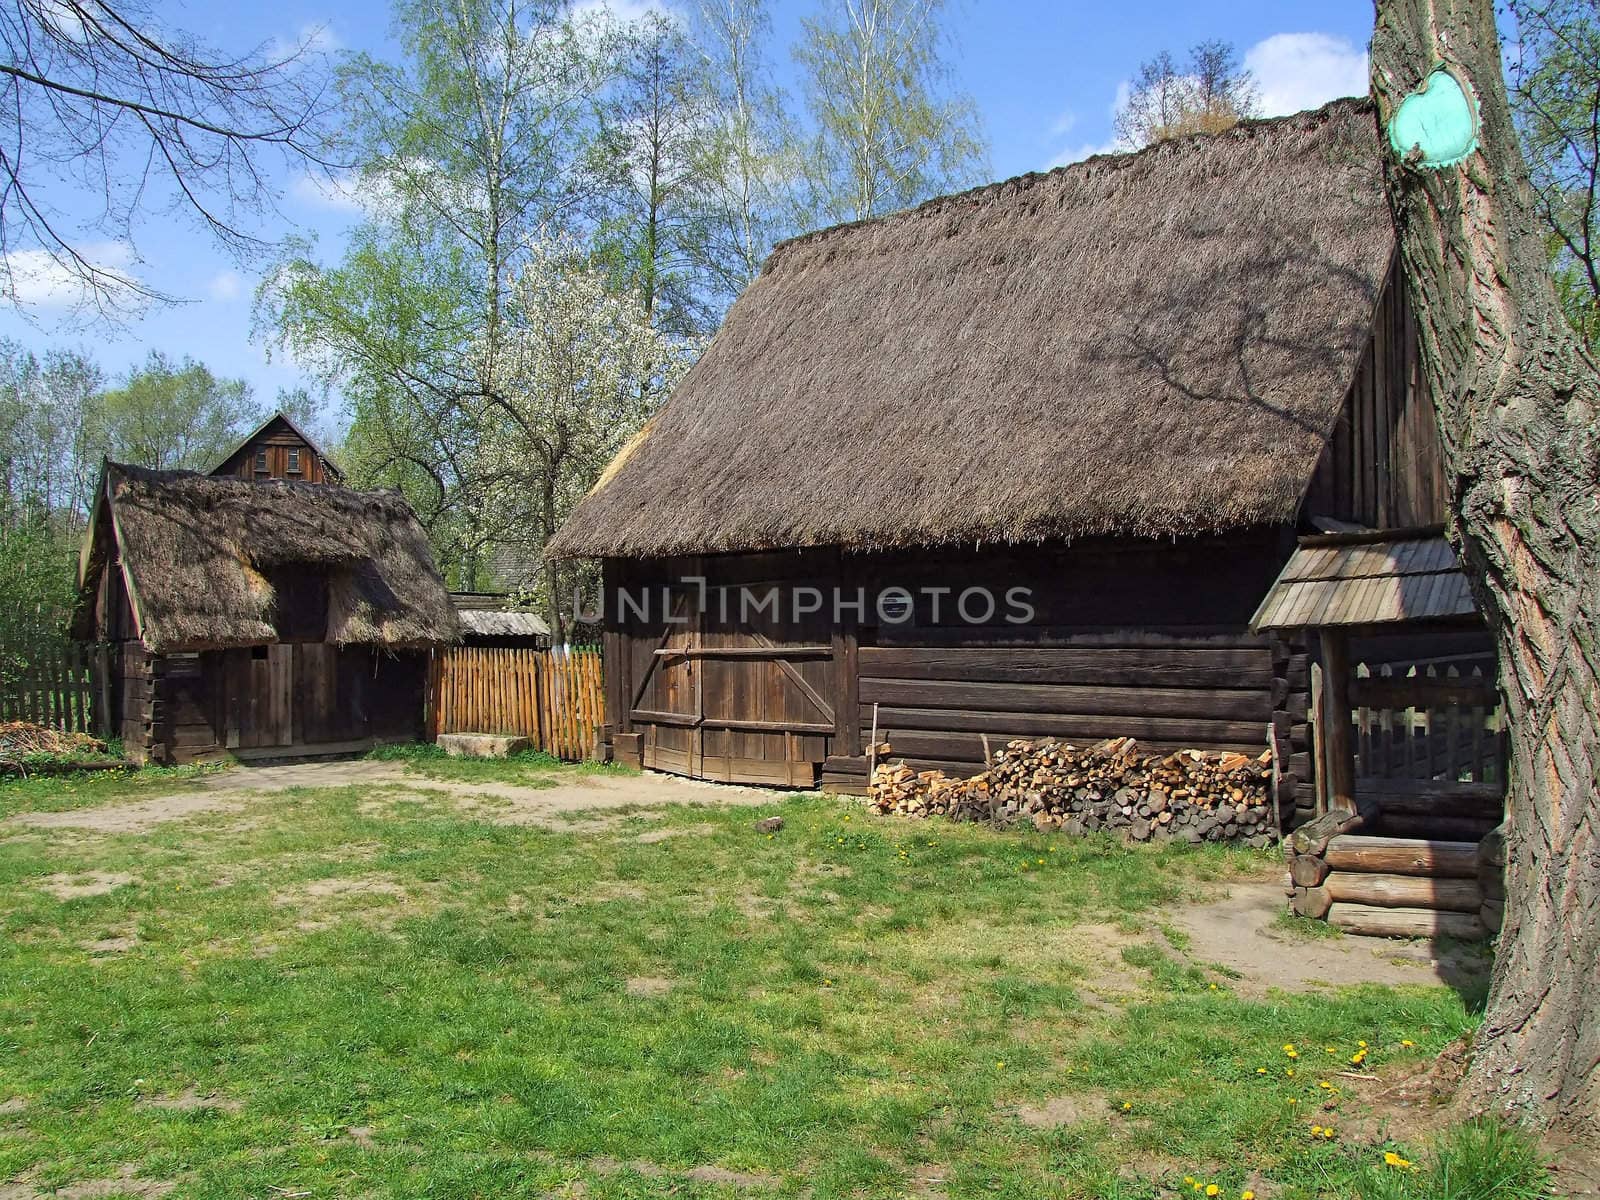 Old wooden hut in village, green grass around